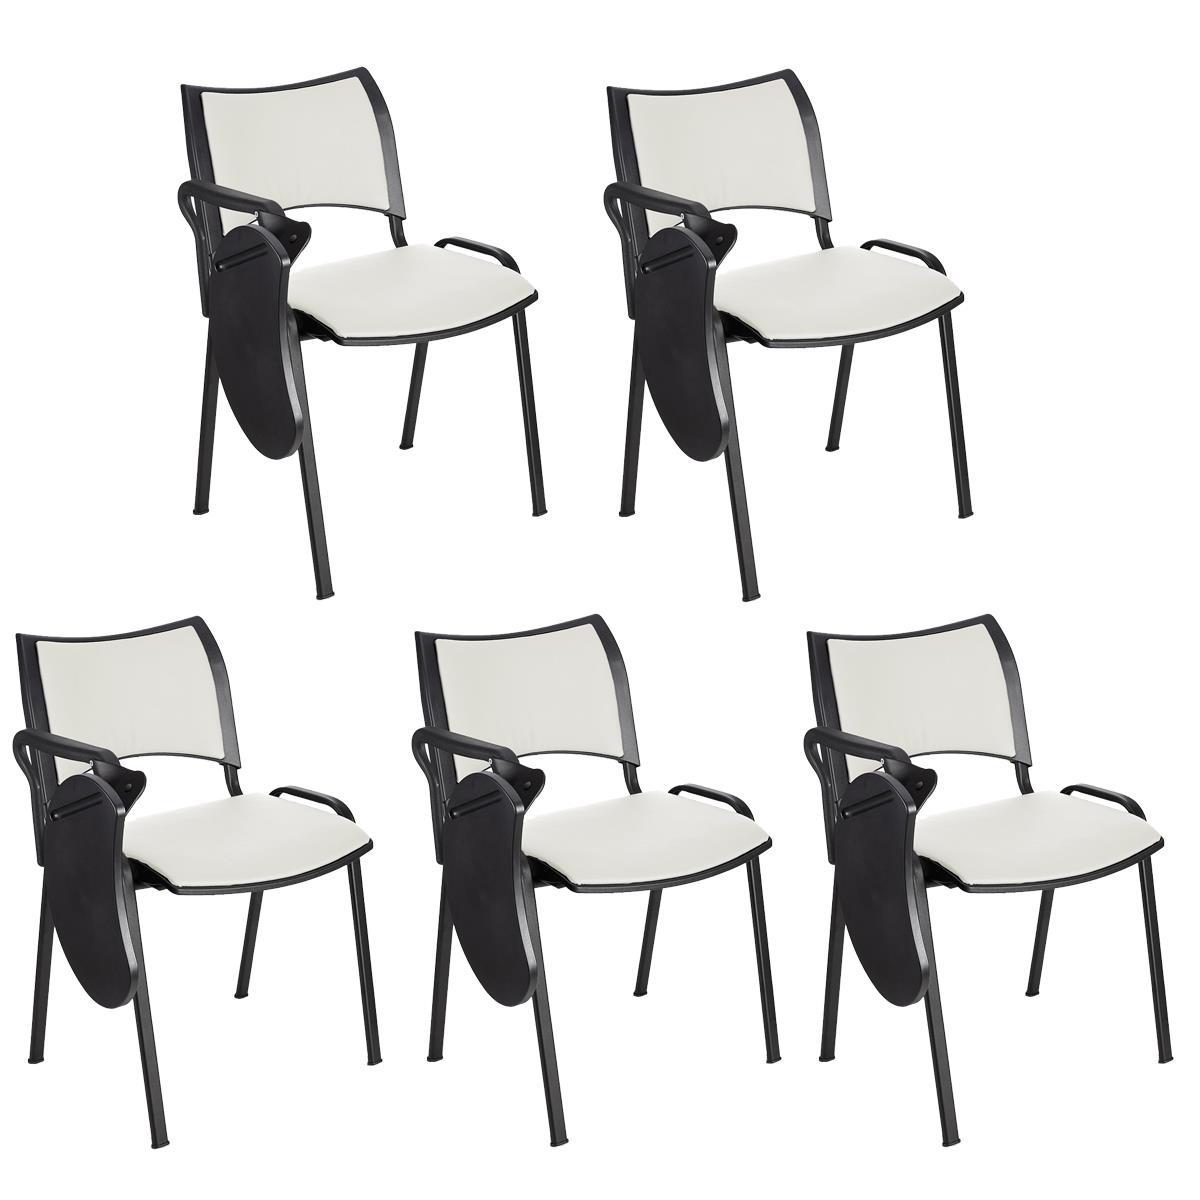 Im 5er-Set: Besucherstuhl ROMEL LEDER MIT SCHREIBBRETT, bequeme Polsterung, stapelbar, schwarze Stuhlbeine, Farbe Weiß